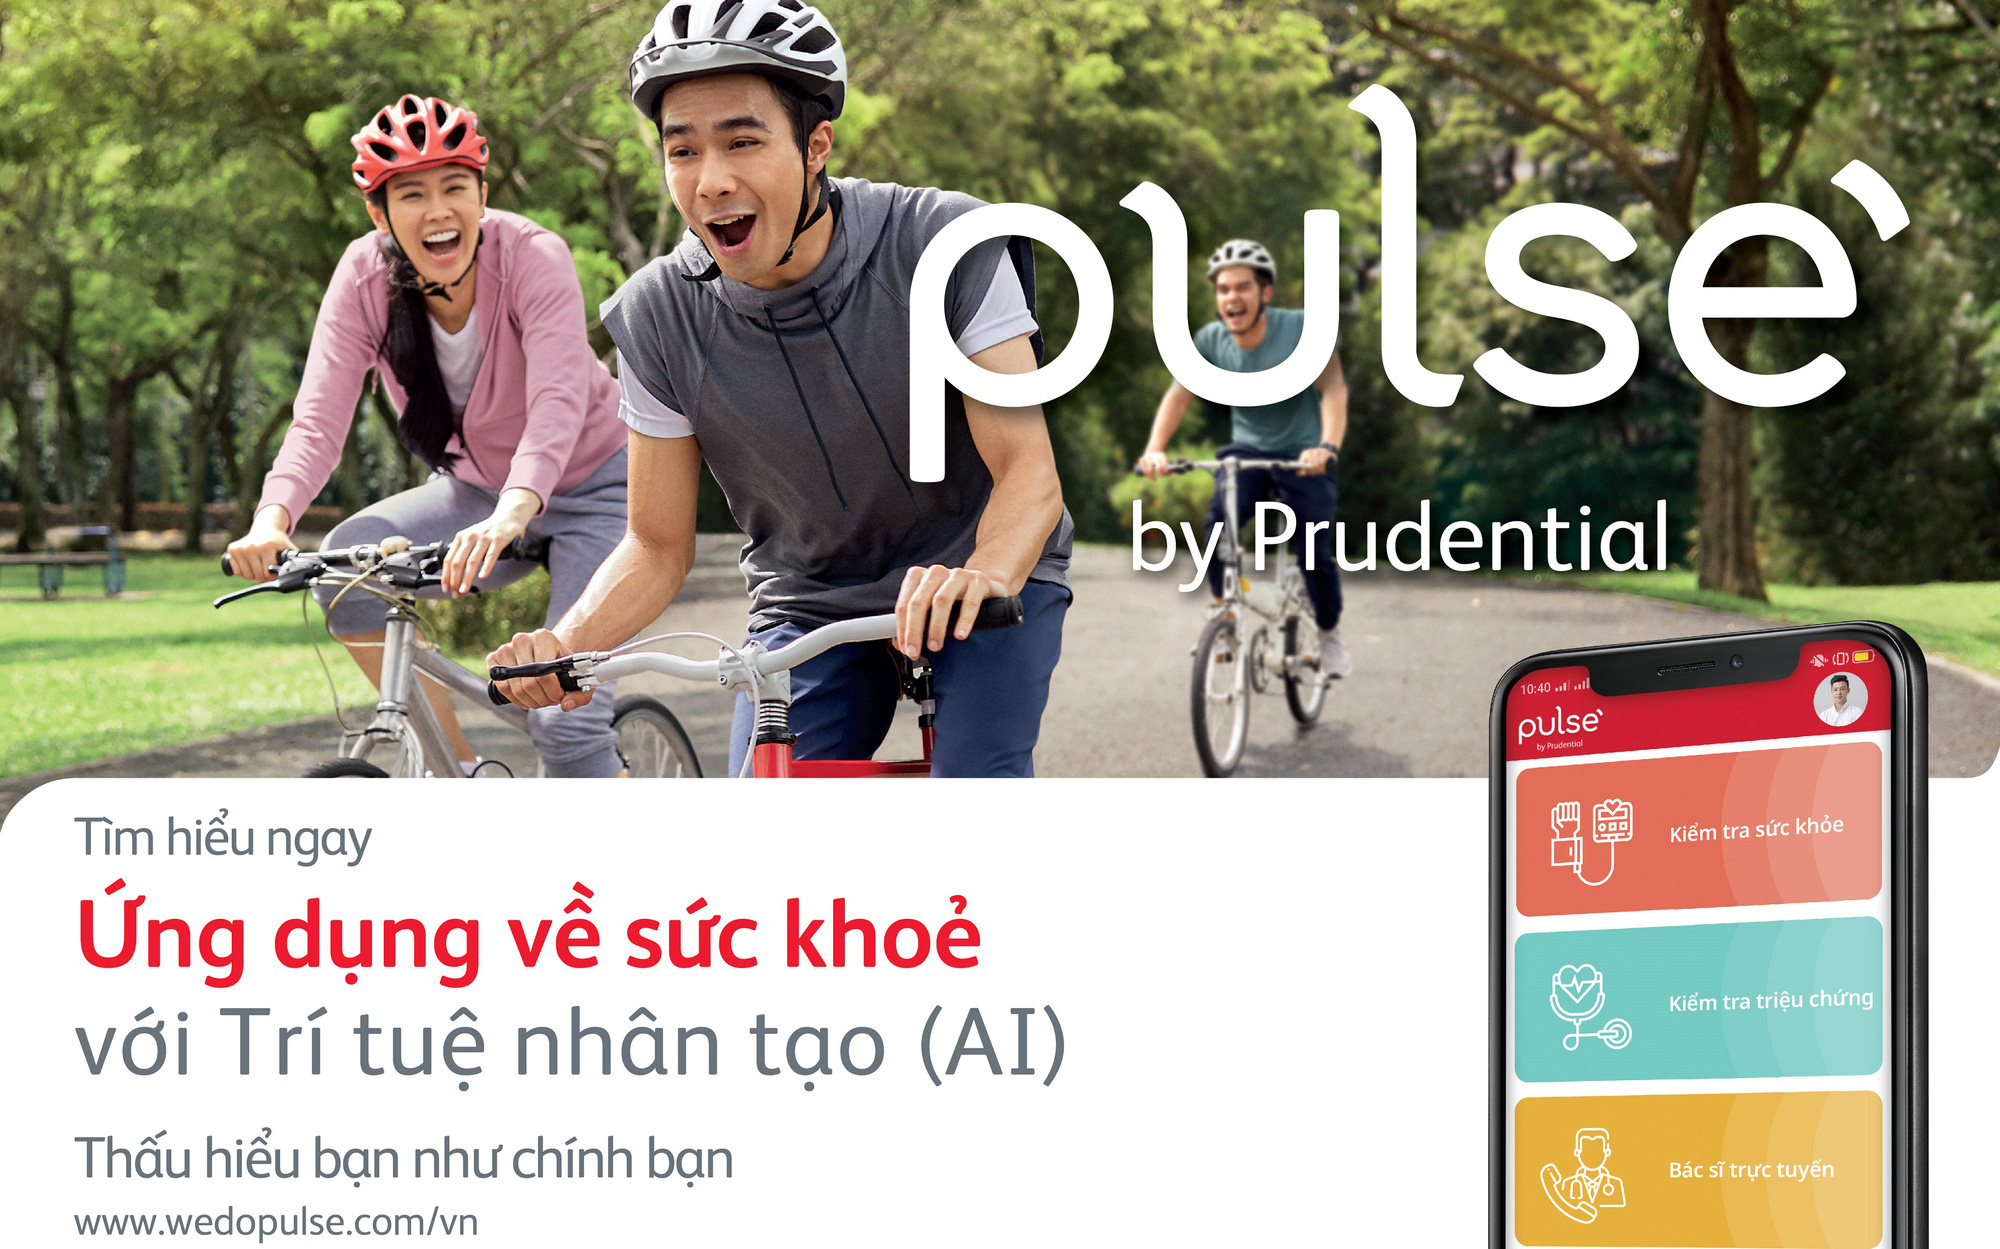 Prudential Việt Nam ra mắt ứng dụng chăm sóc sức khỏe Pulse by Prudential